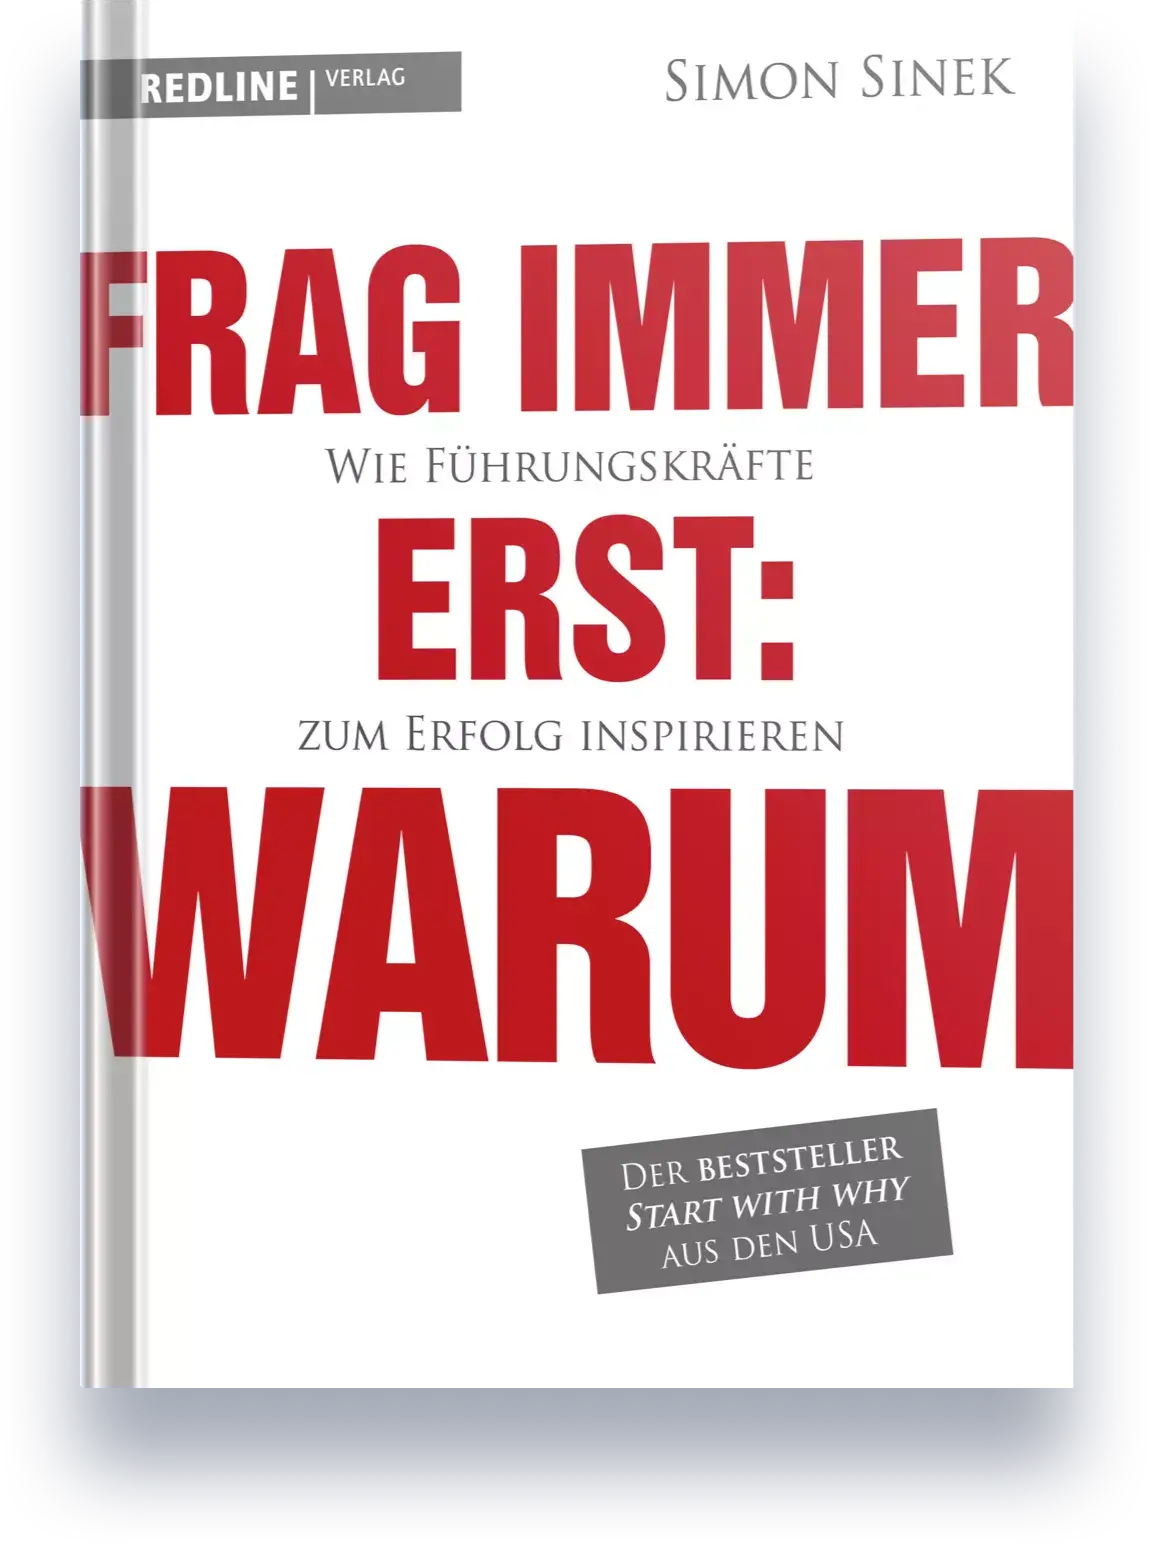 Buchcover von Frag immer erst: WARUM